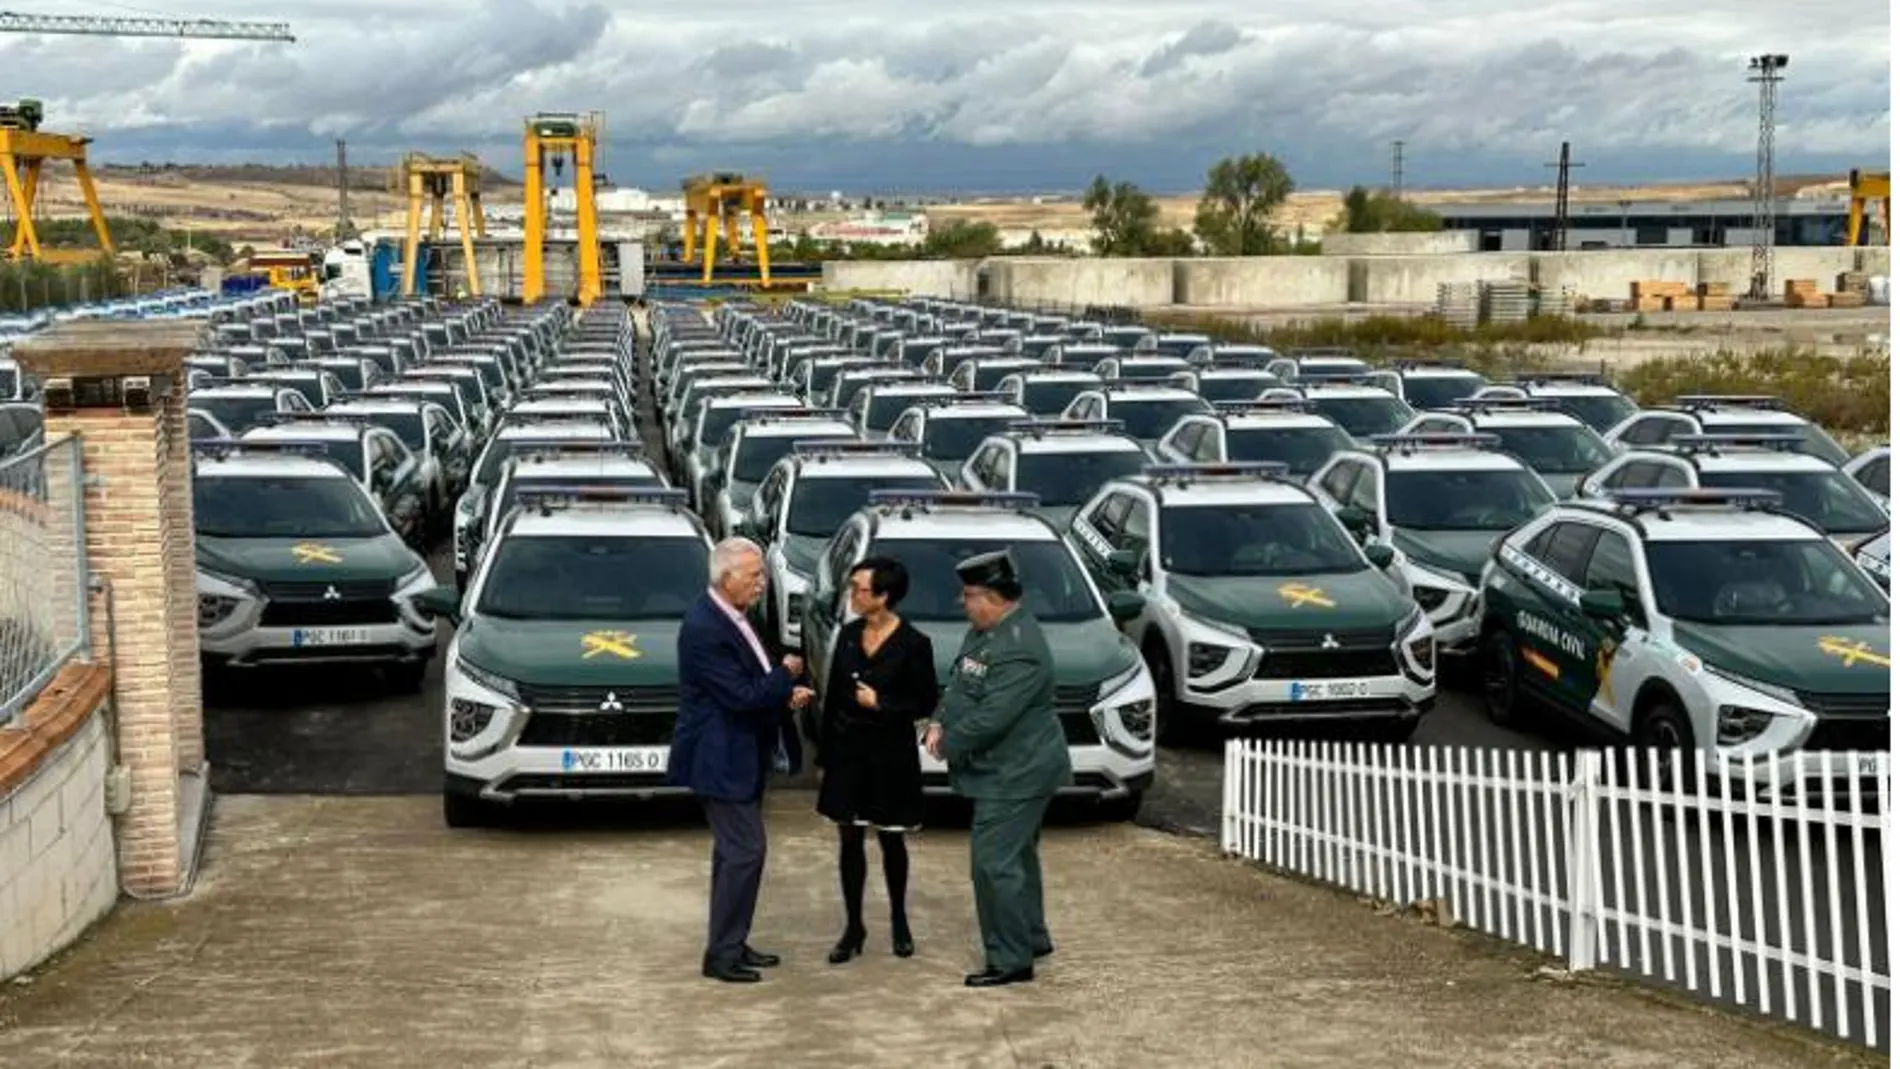 La Guardia Civil recibe 58 nuevos vehículos de la marca CITROËN 